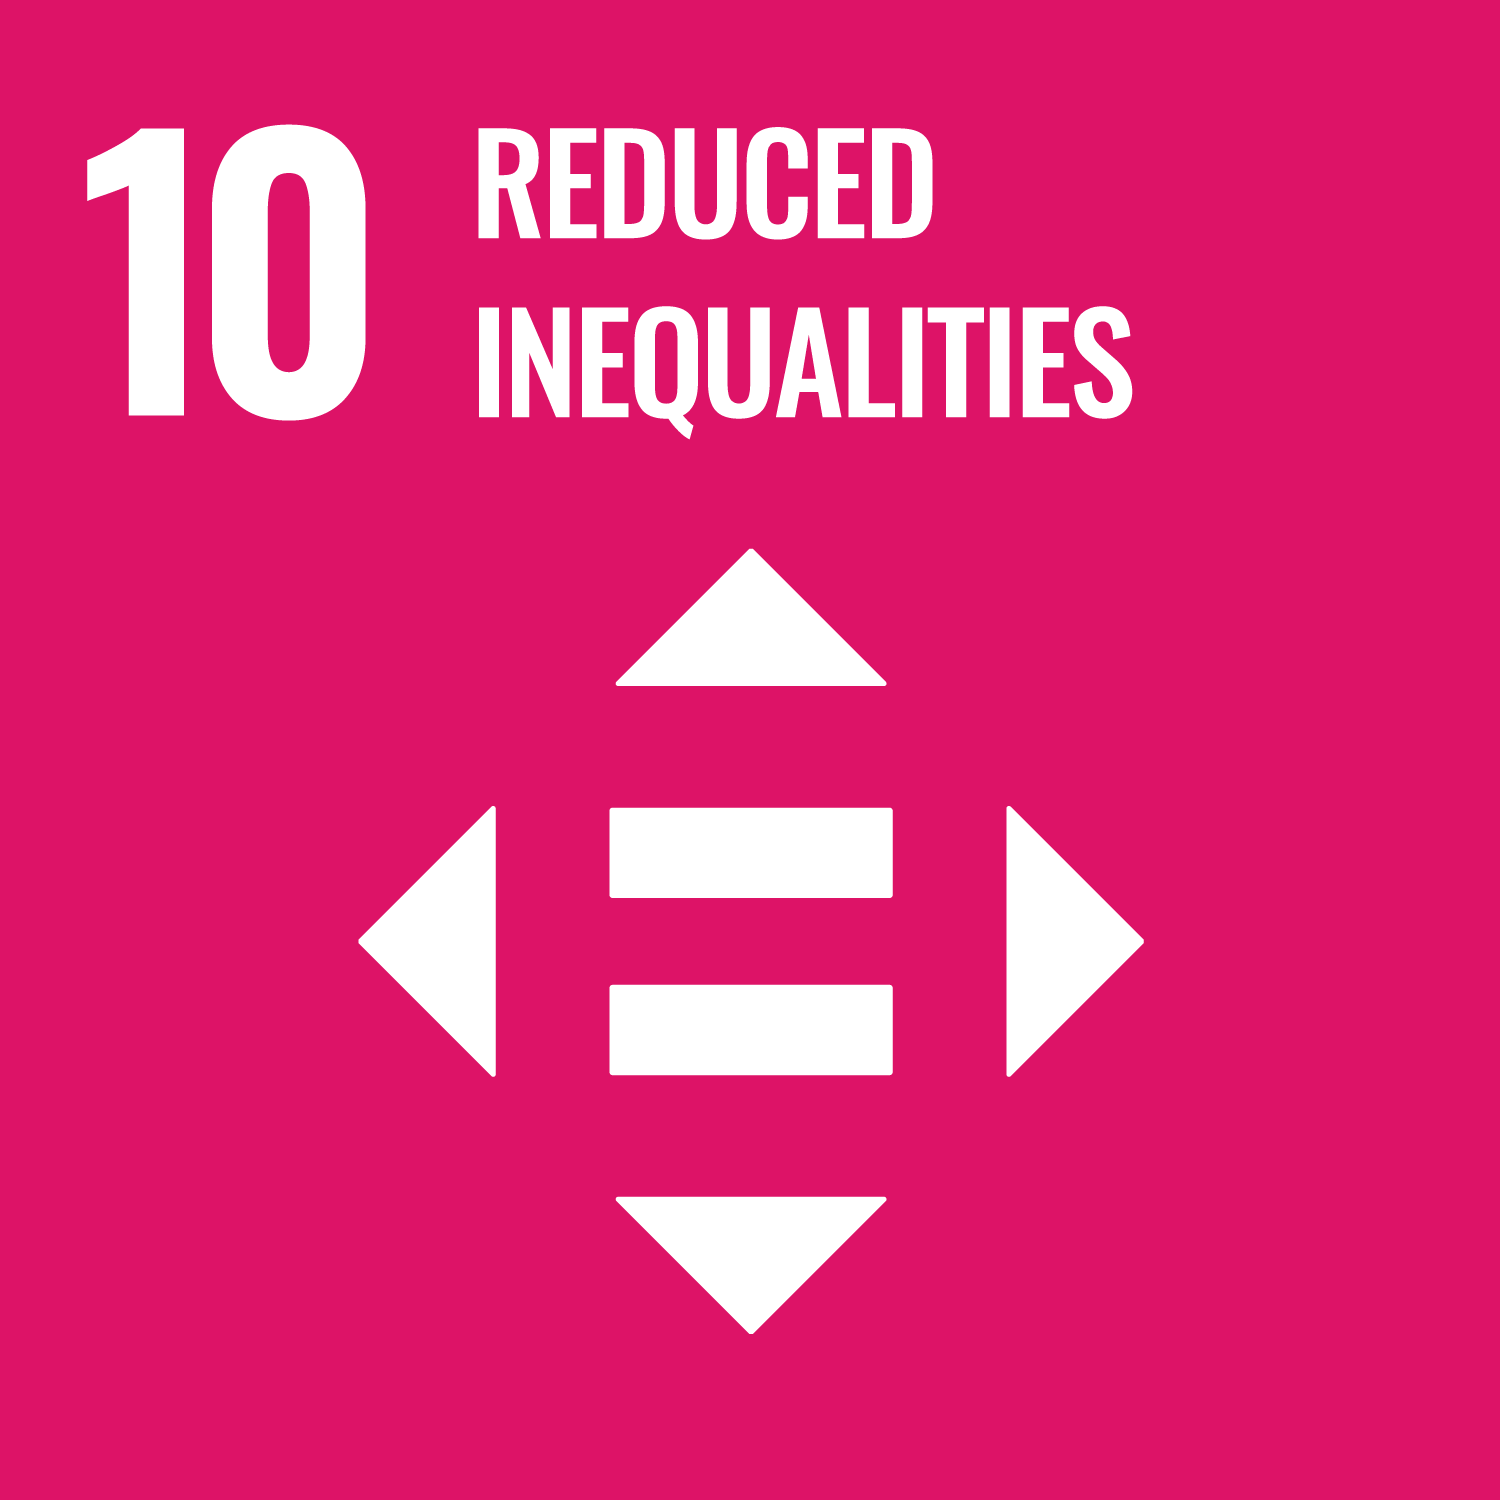 Reduce inequalities / Reducir las desigualdades